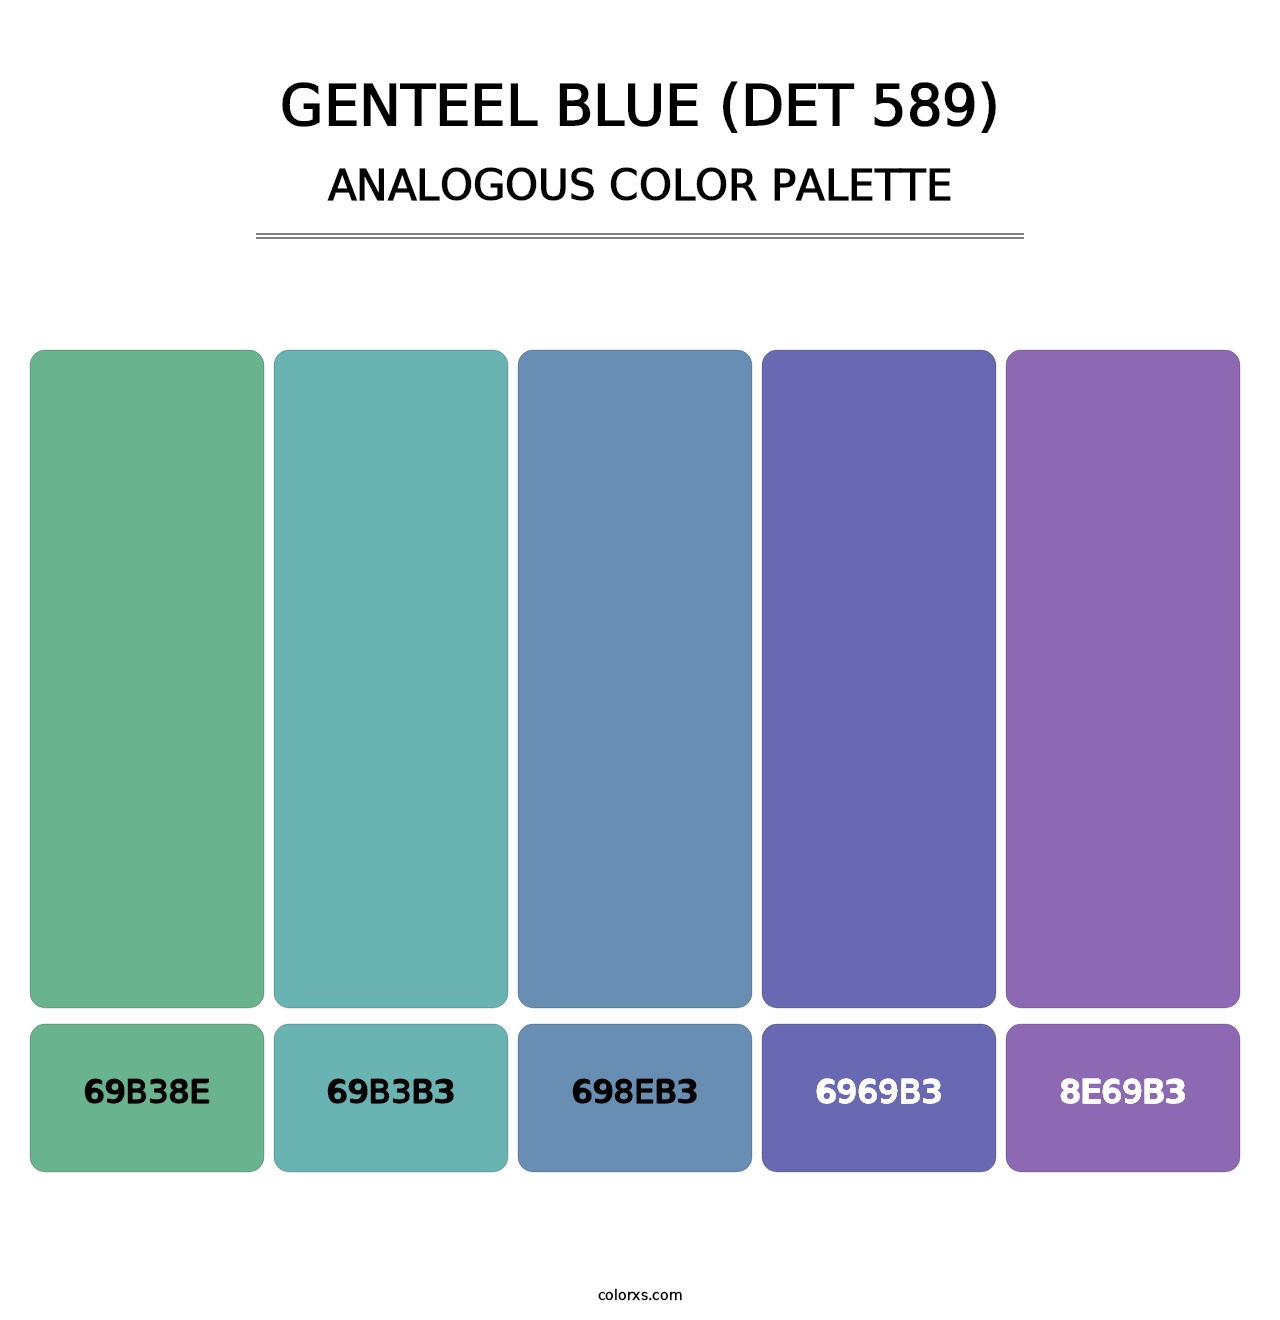 Genteel Blue (DET 589) - Analogous Color Palette